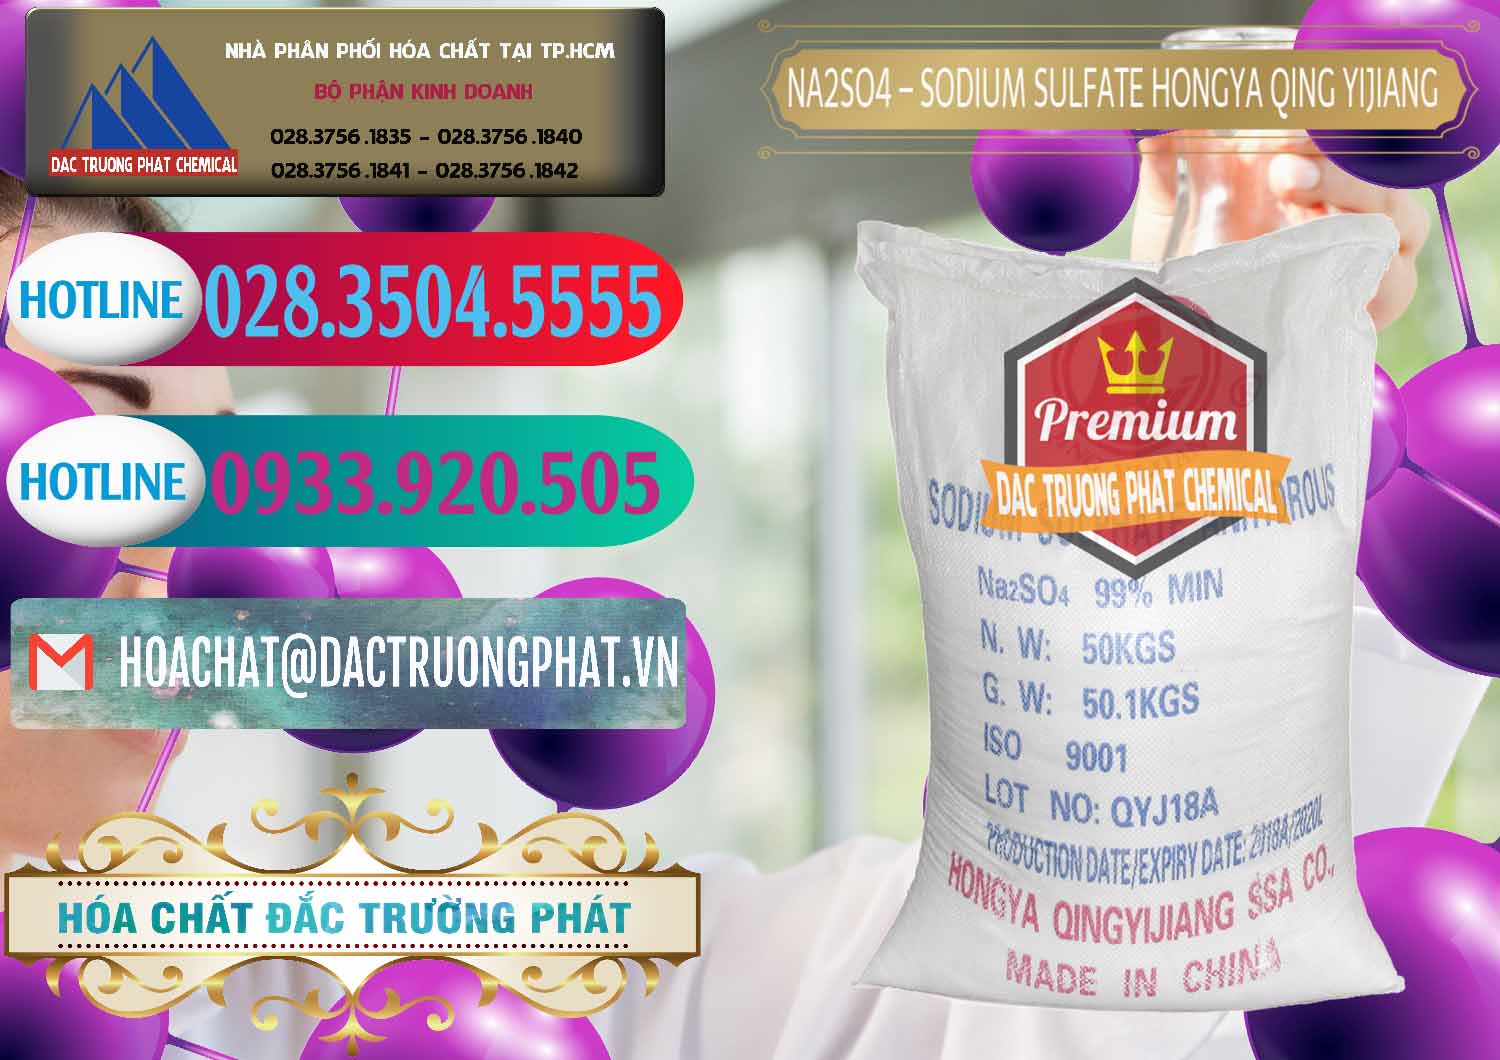 Cty bán ( cung cấp ) Sodium Sulphate - Muối Sunfat Na2SO4 Logo Cánh Bườm Hongya Qing Yi Trung Quốc China - 0098 - Công ty chuyên cung ứng - phân phối hóa chất tại TP.HCM - truongphat.vn